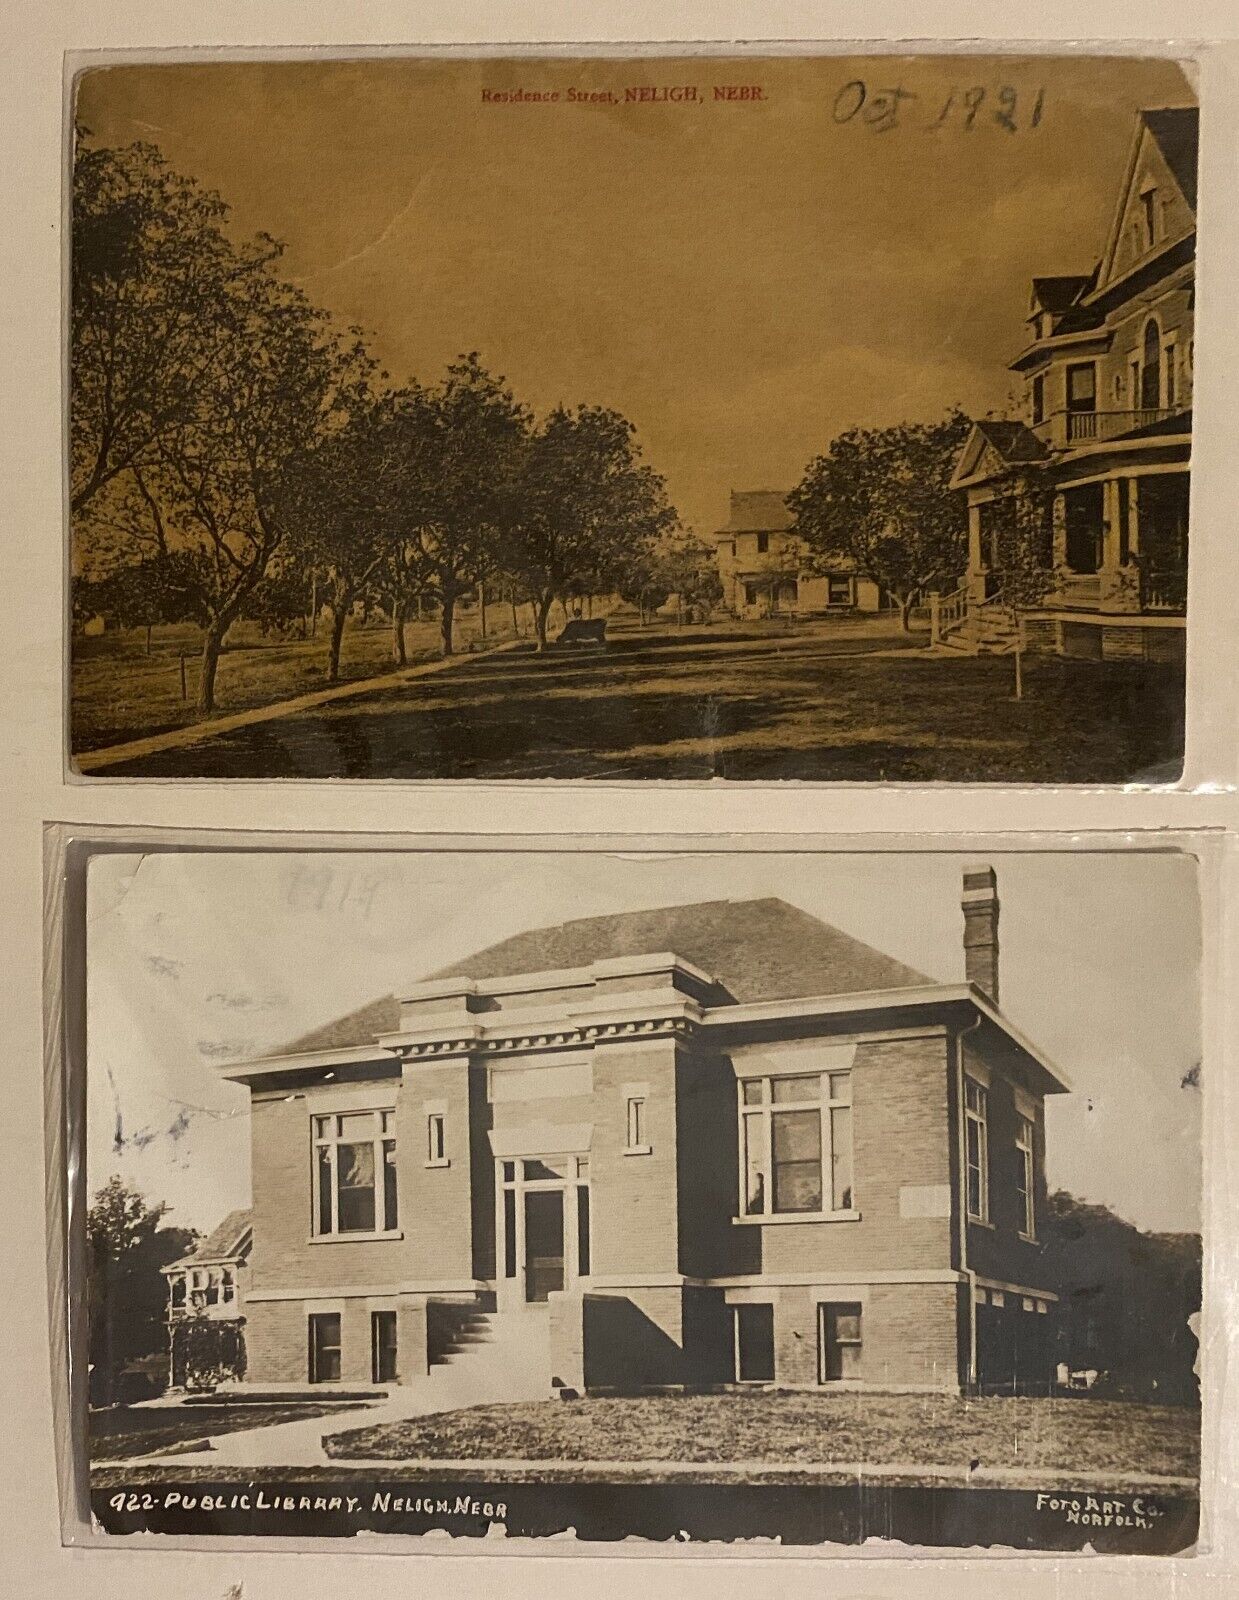 2 Post Cards Neligh Nebraska Residence St Library 1919 Antelope County